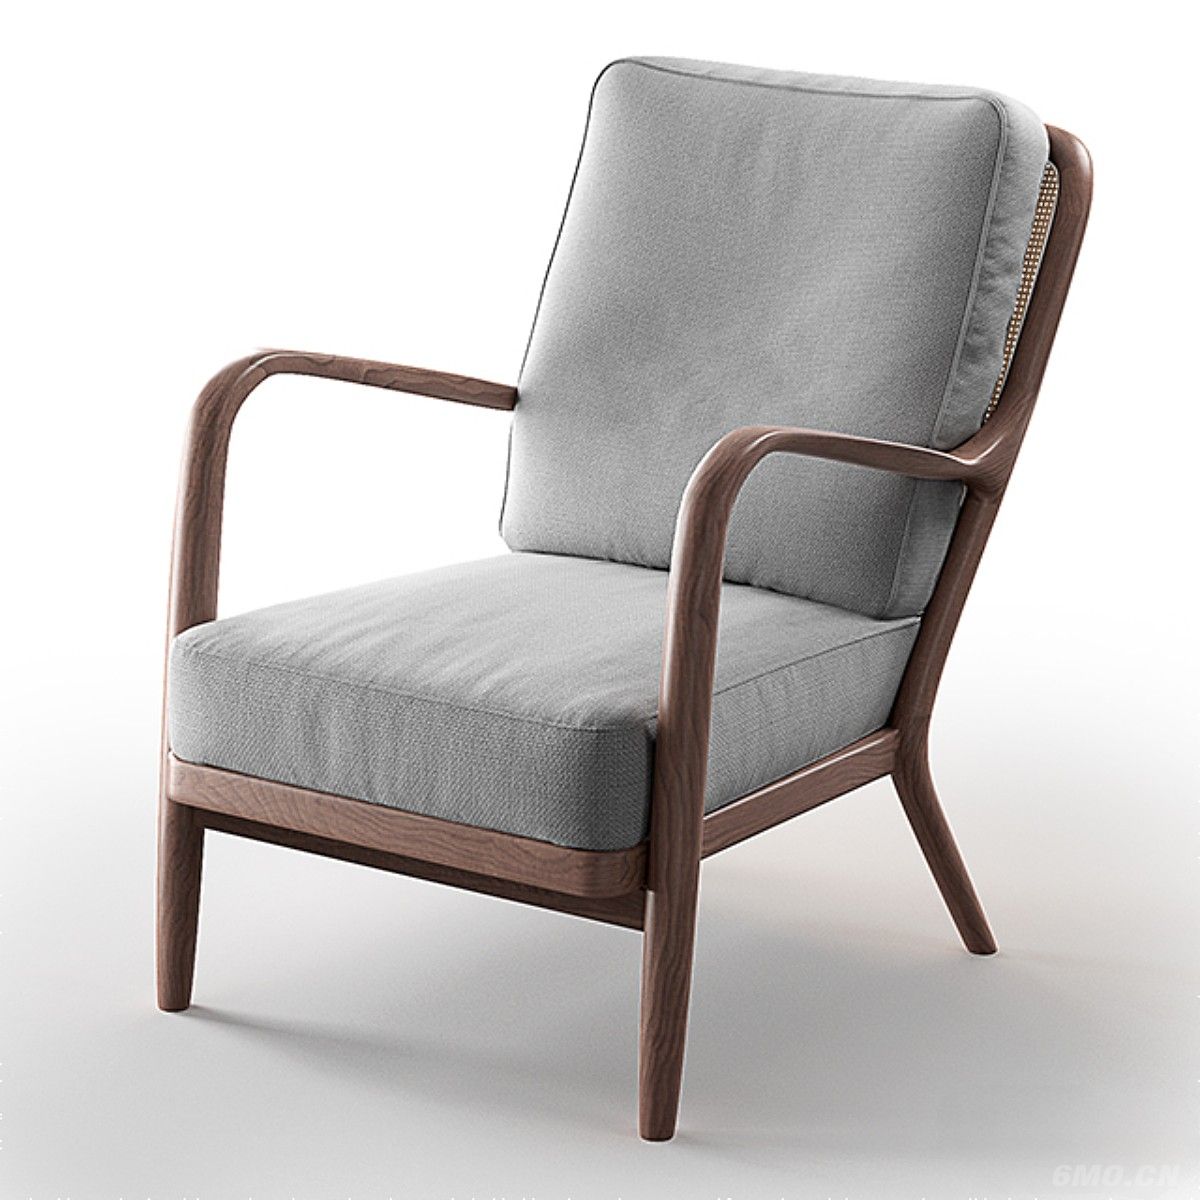 椅子类,Arm chair,沙发椅